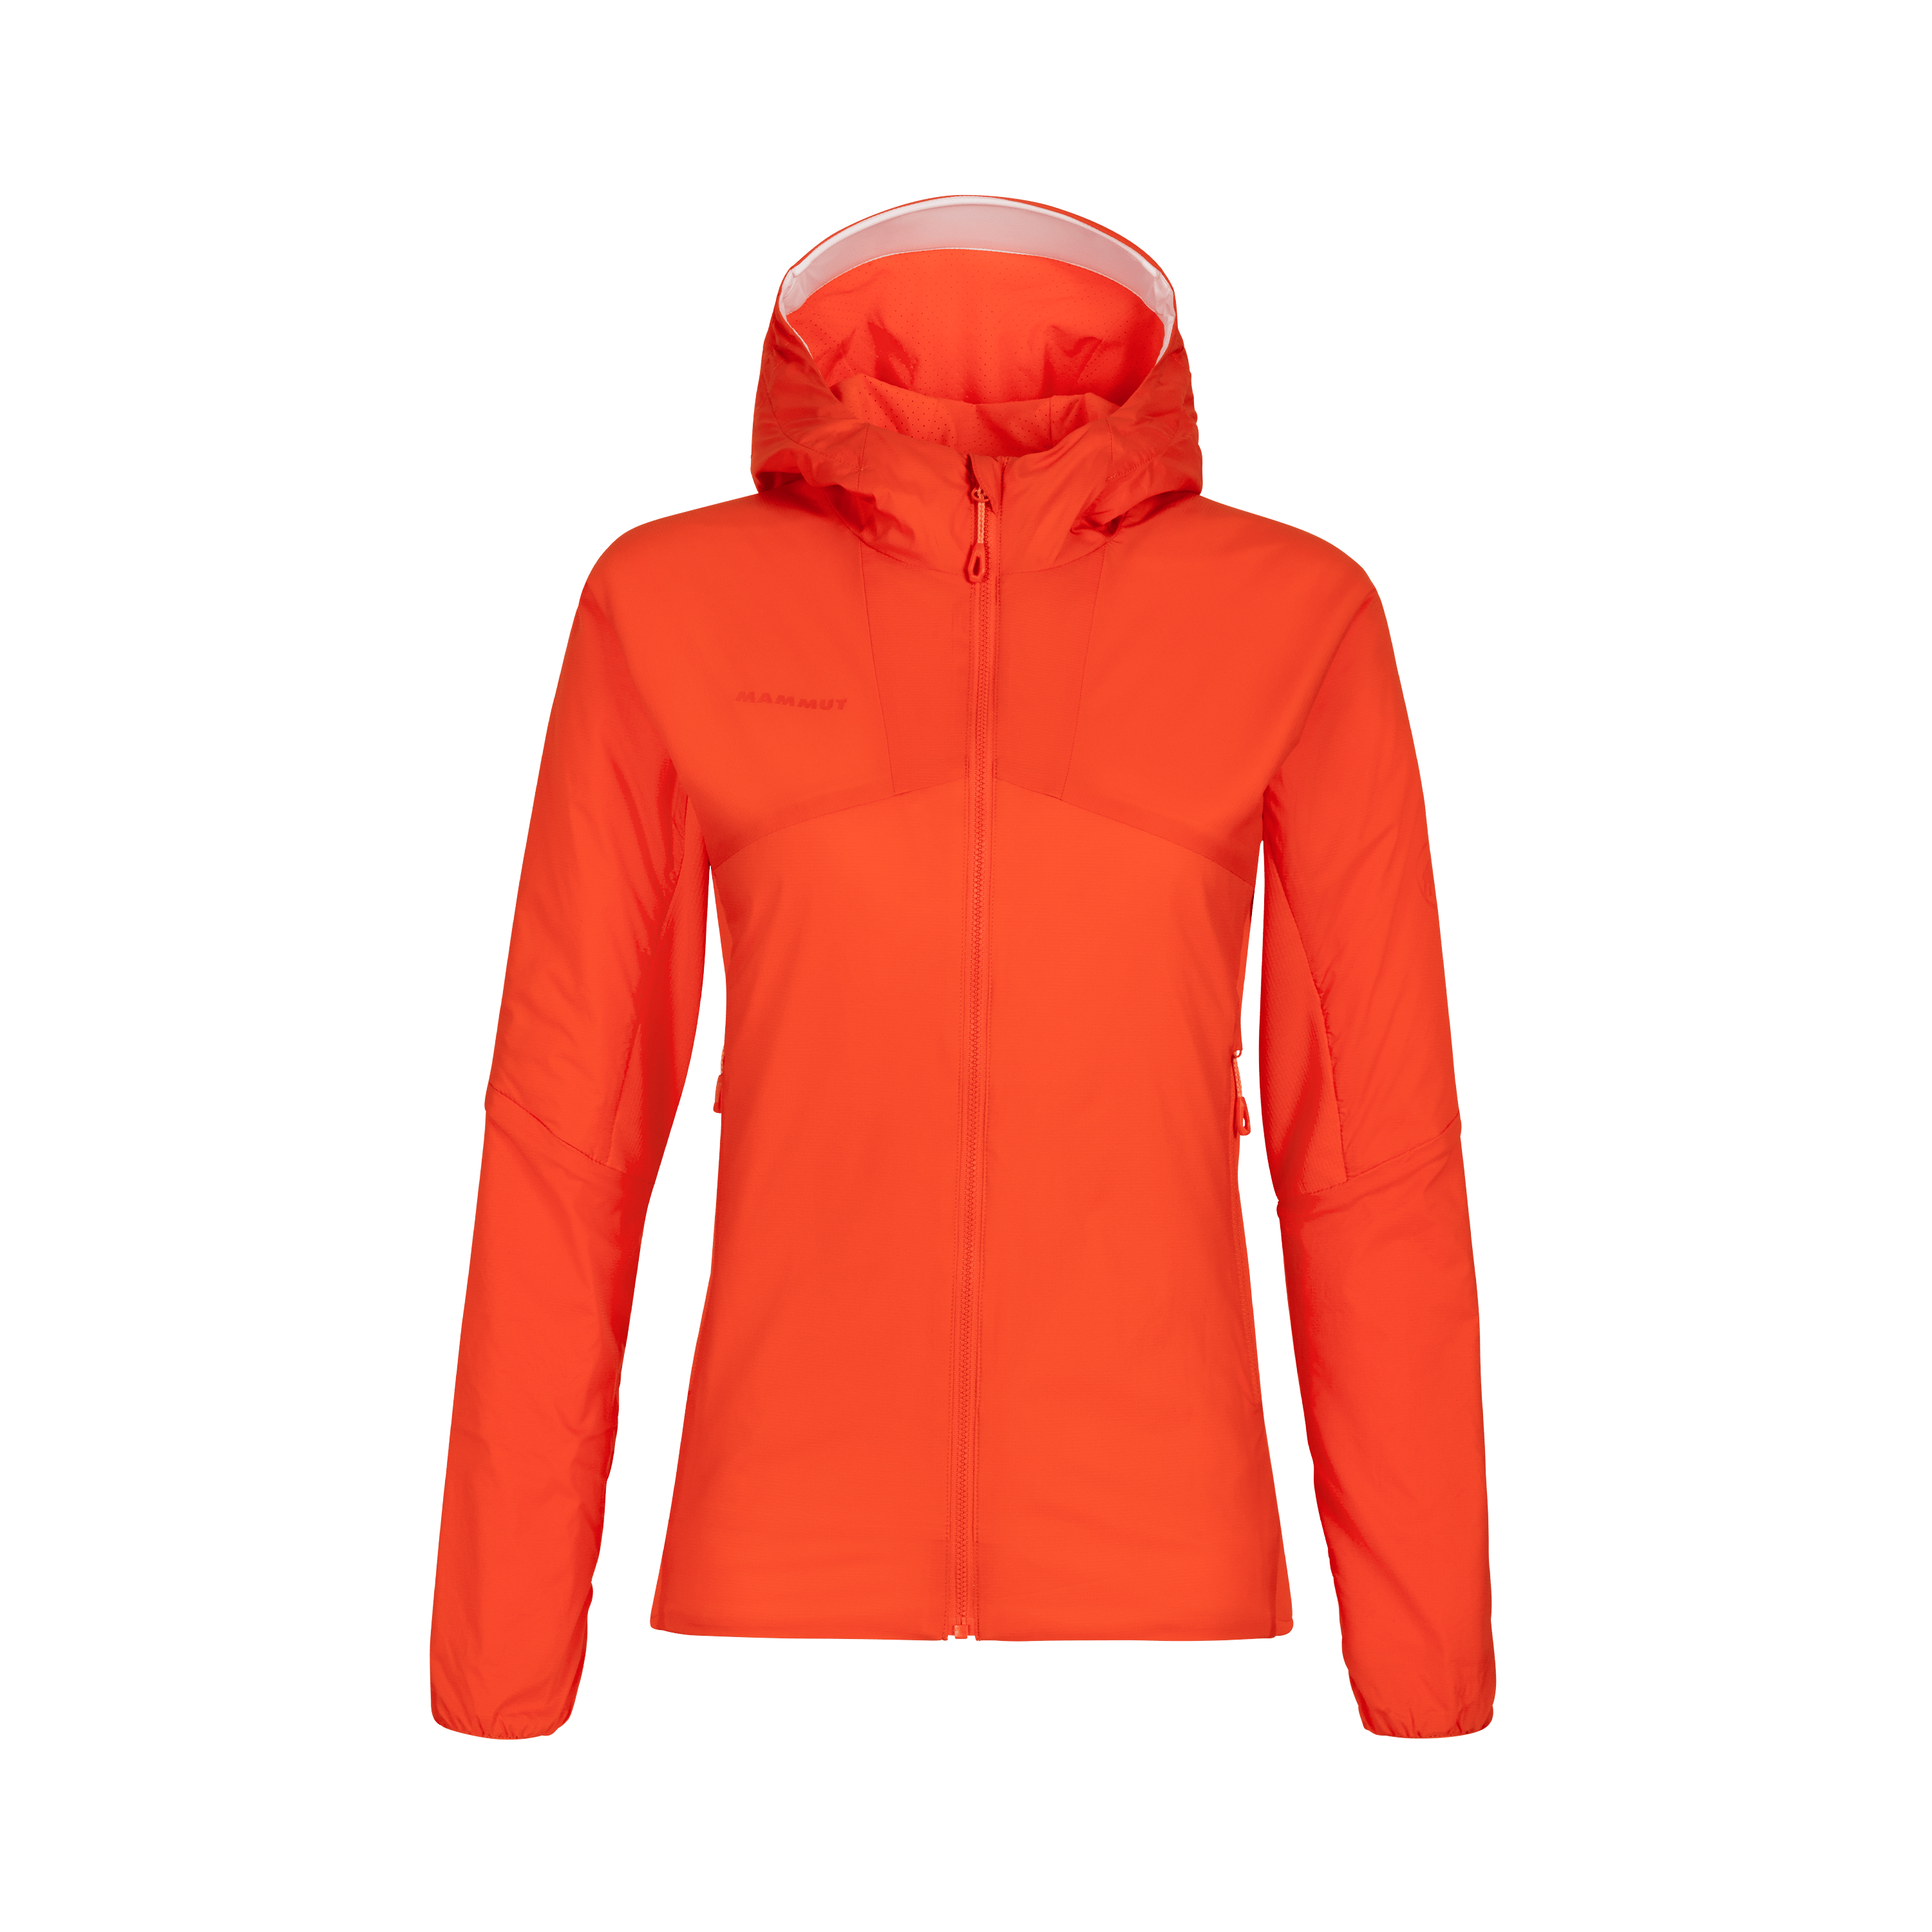 Rime Light IN Flex Hooded Jacket Women - poinciana thumbnail